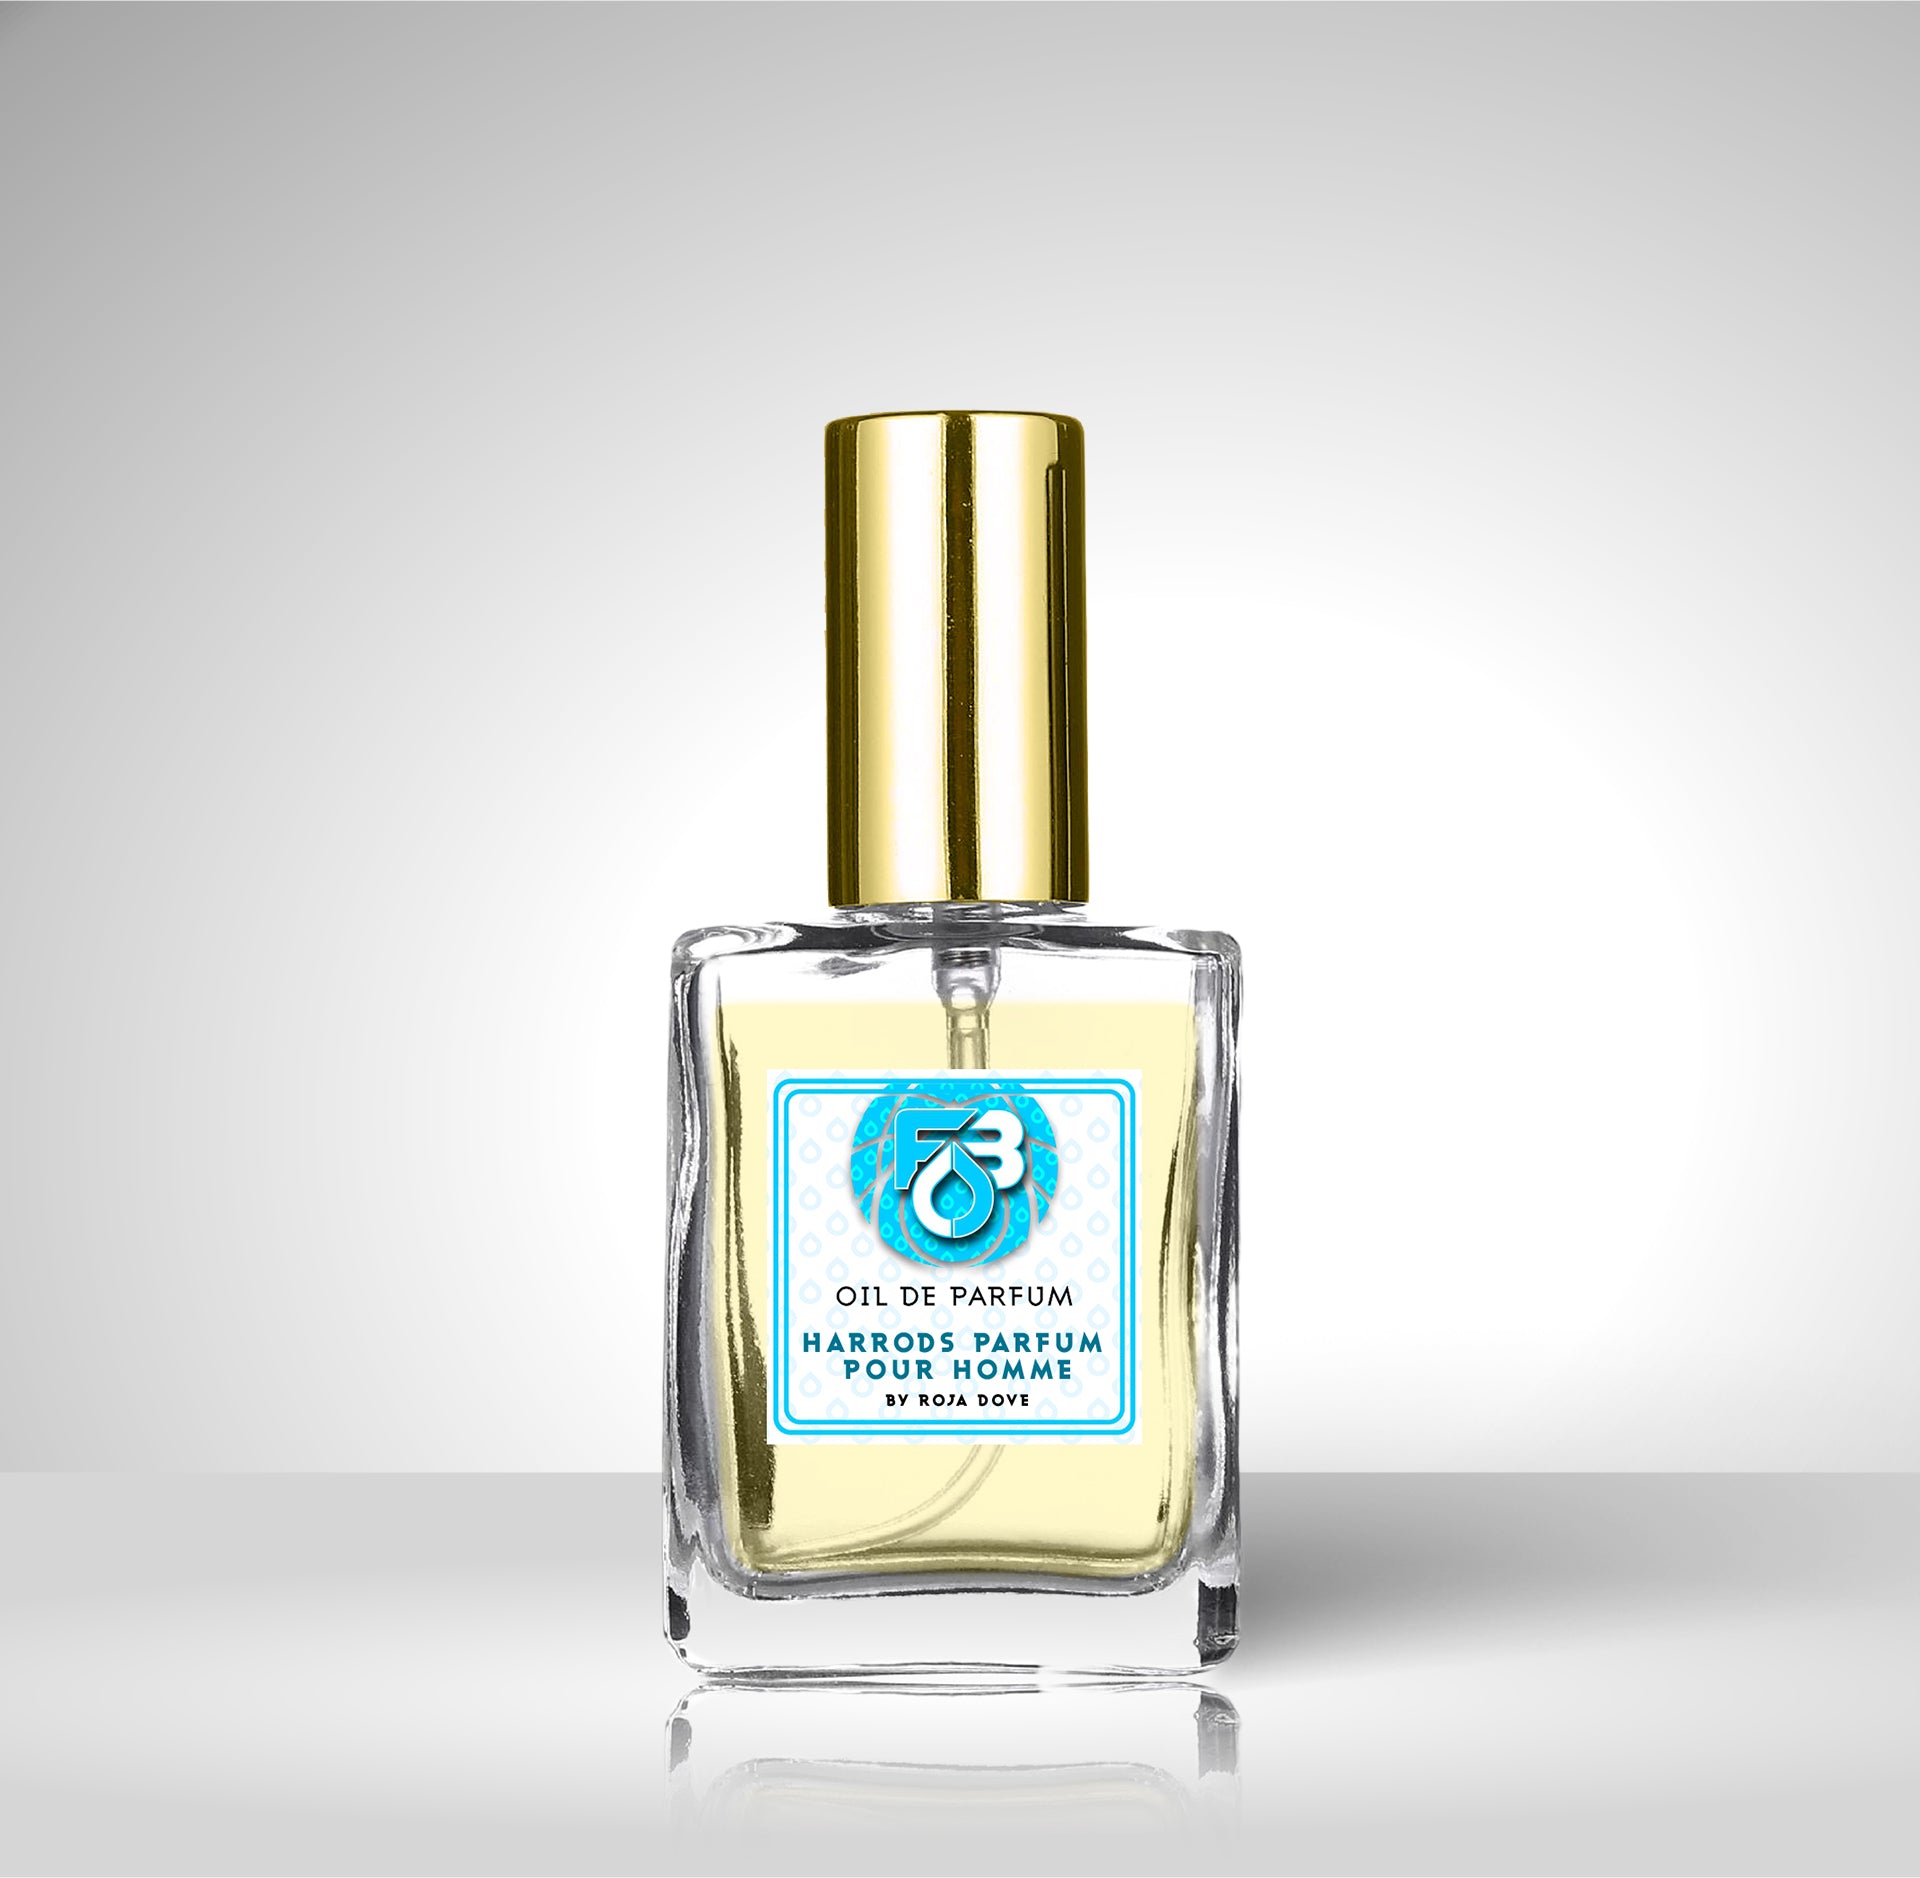 Compare To Harrods Parfum Pour Homme®